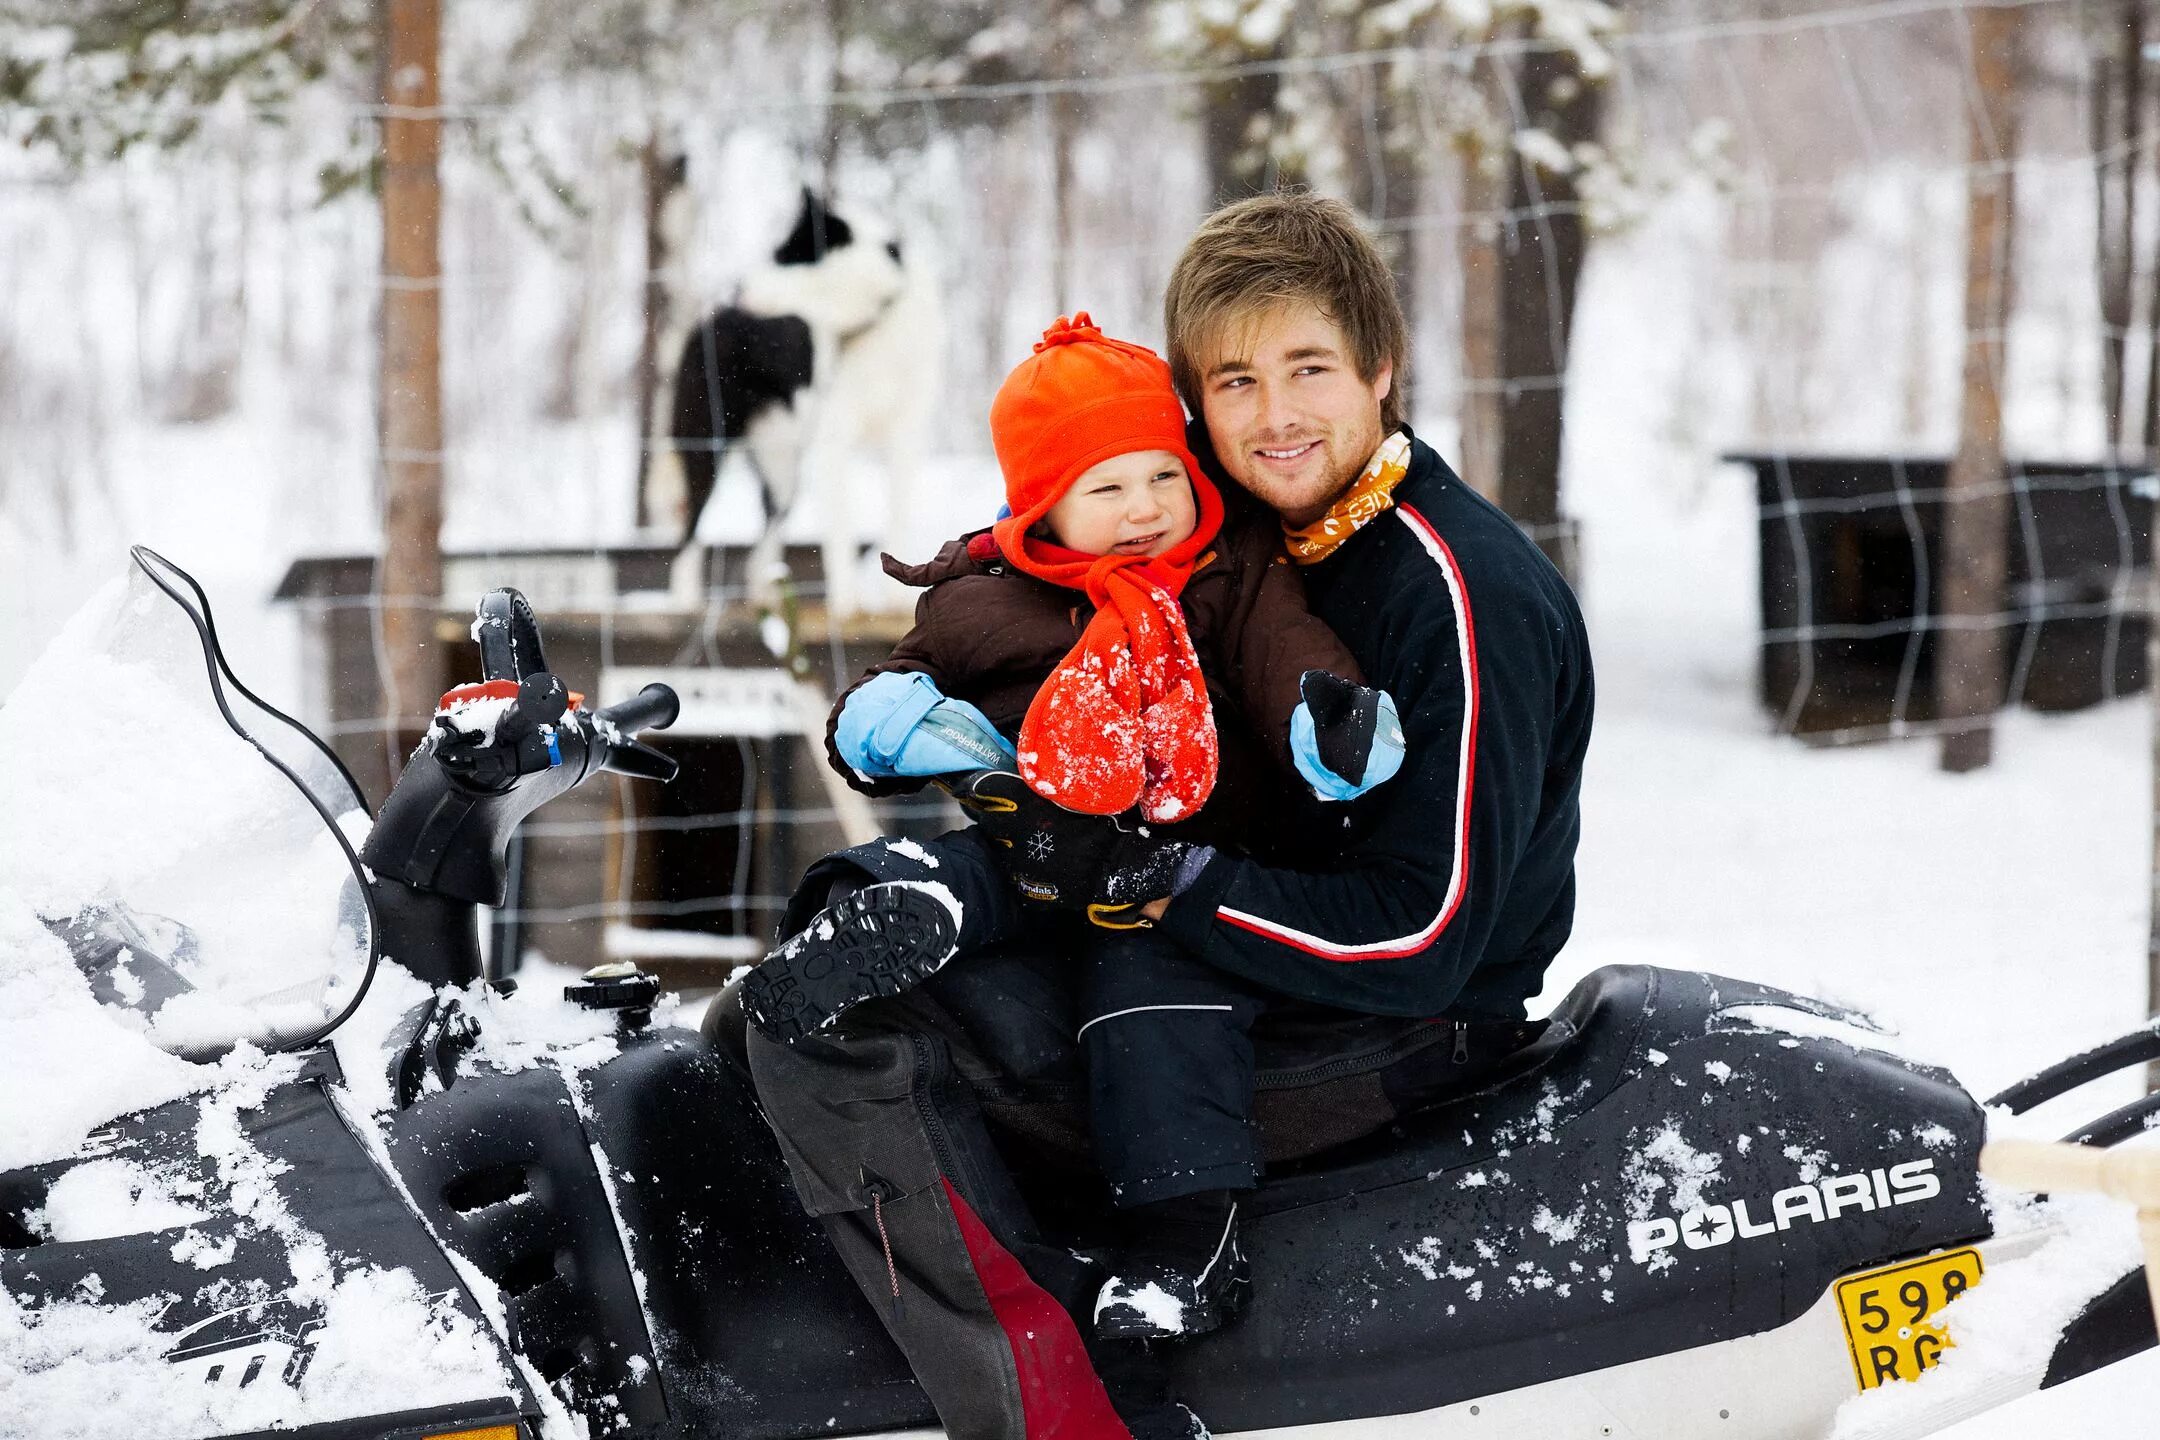 Катание на снегоходе. Снегоход для детей. Семья на снегоходе. Папа ребёнок снегоход. Private family